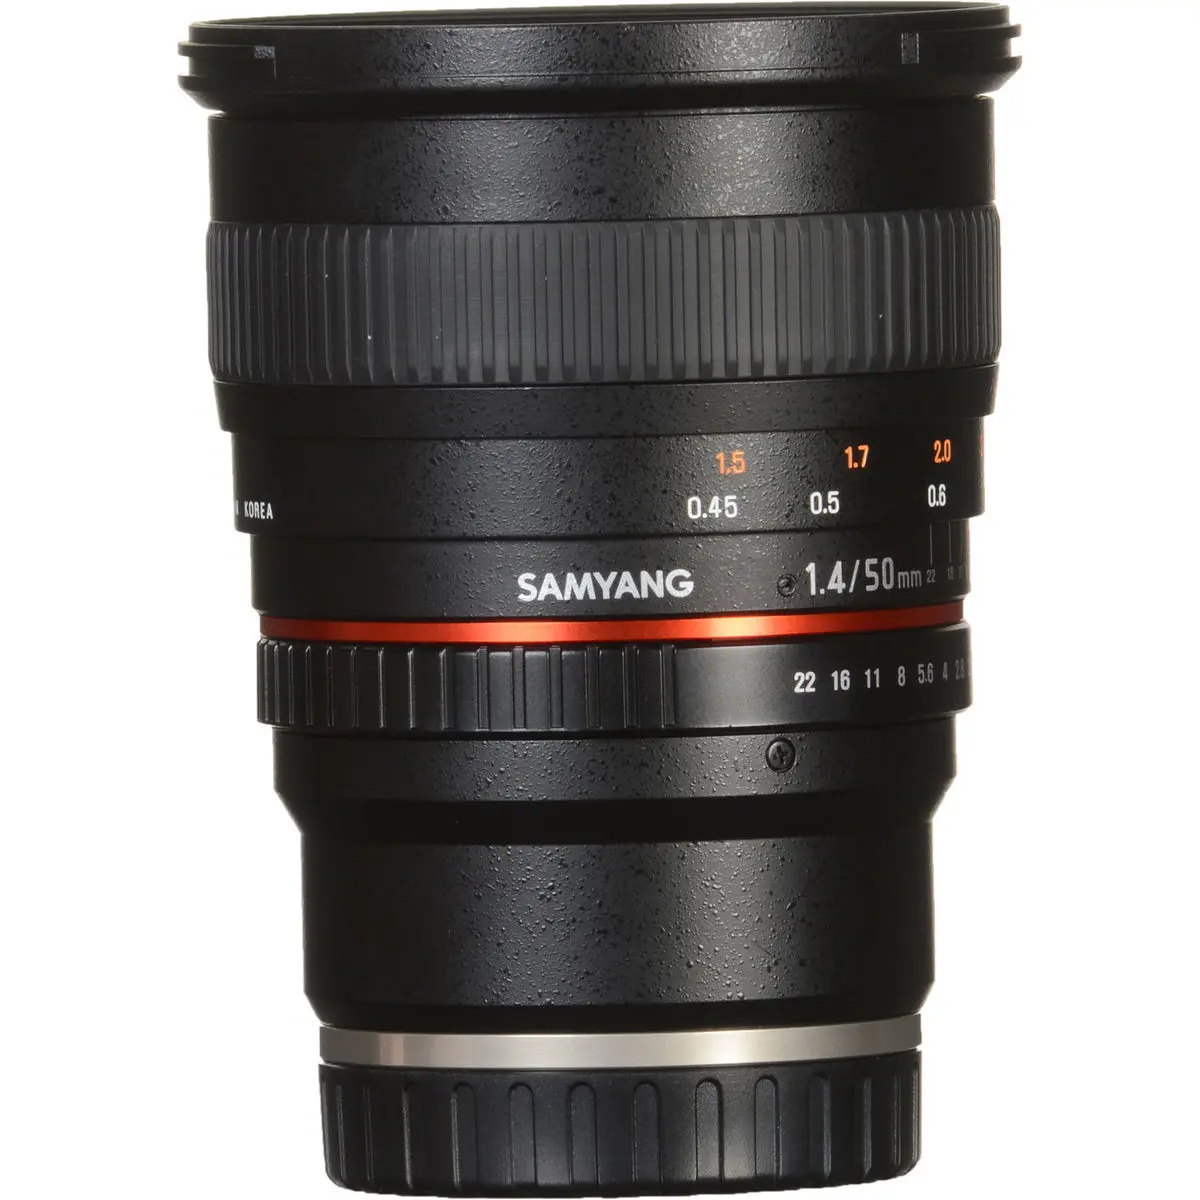 7. Samyang 50 mm f/1.4 AS UMC (Sony E) Lens